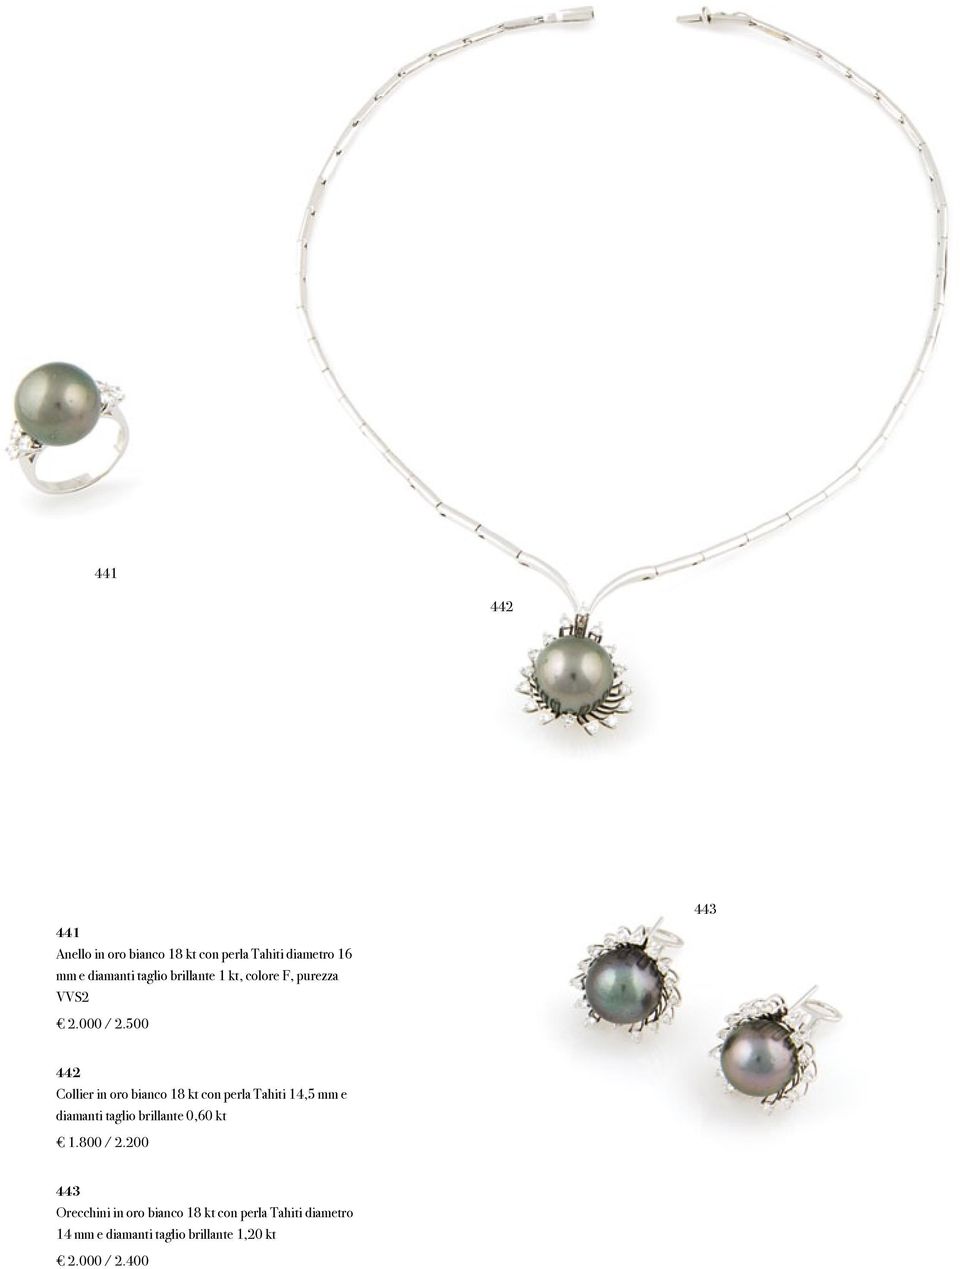 500 442 Collier in oro bianco 18 kt con perla Tahiti 14,5 mm e diamanti taglio brillante